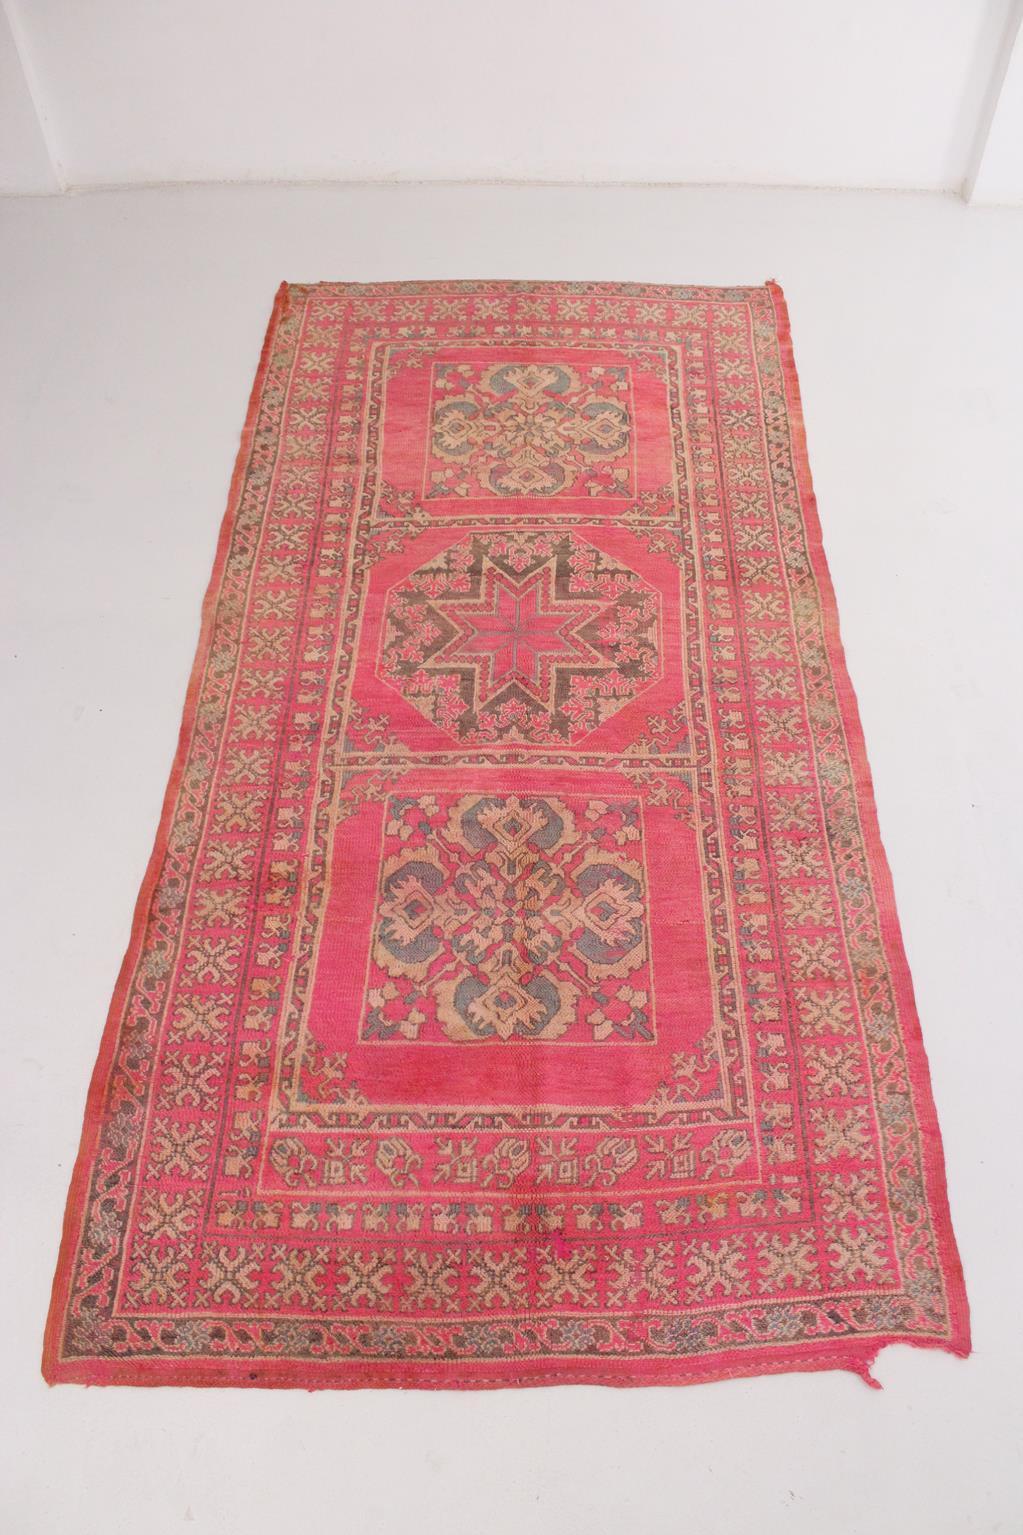 Vintage Rugs vom Stamm der Ait Yacoub, Hoher Atlas, Marokko, sind bekannt und erkennbar für ihre orientalischen Rosetten- und Blumenmuster in einer mehrfachen Rahmenkomposition. Sie können sich von den ältesten, berühmten Teppichen des